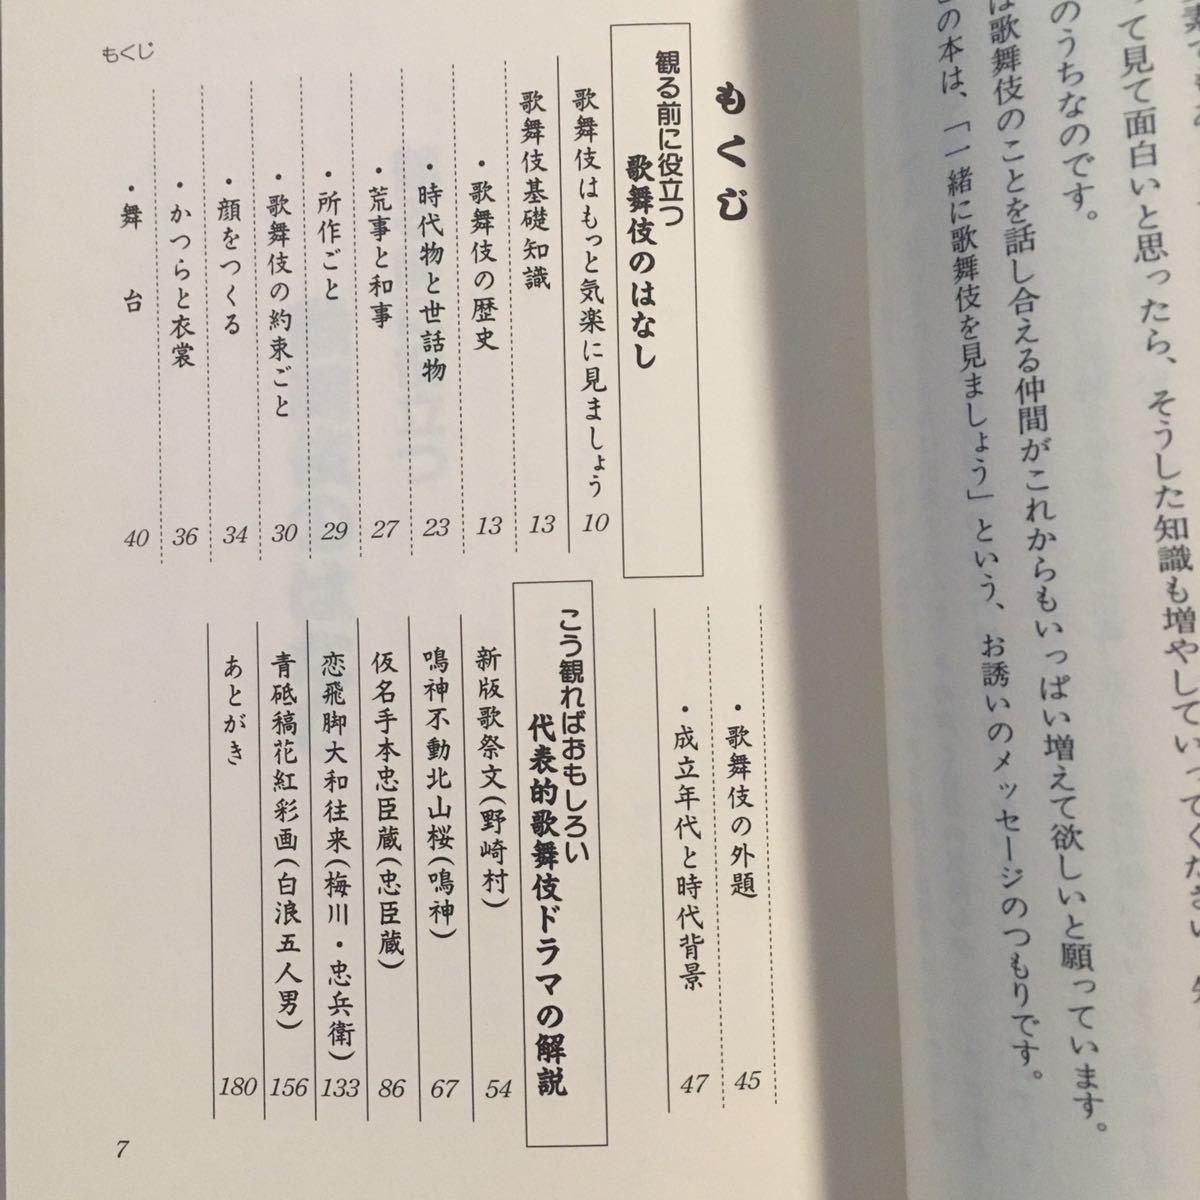 わかりやすい 歌舞伎鑑賞の手引 大内美予子 リバティ書房 1995年